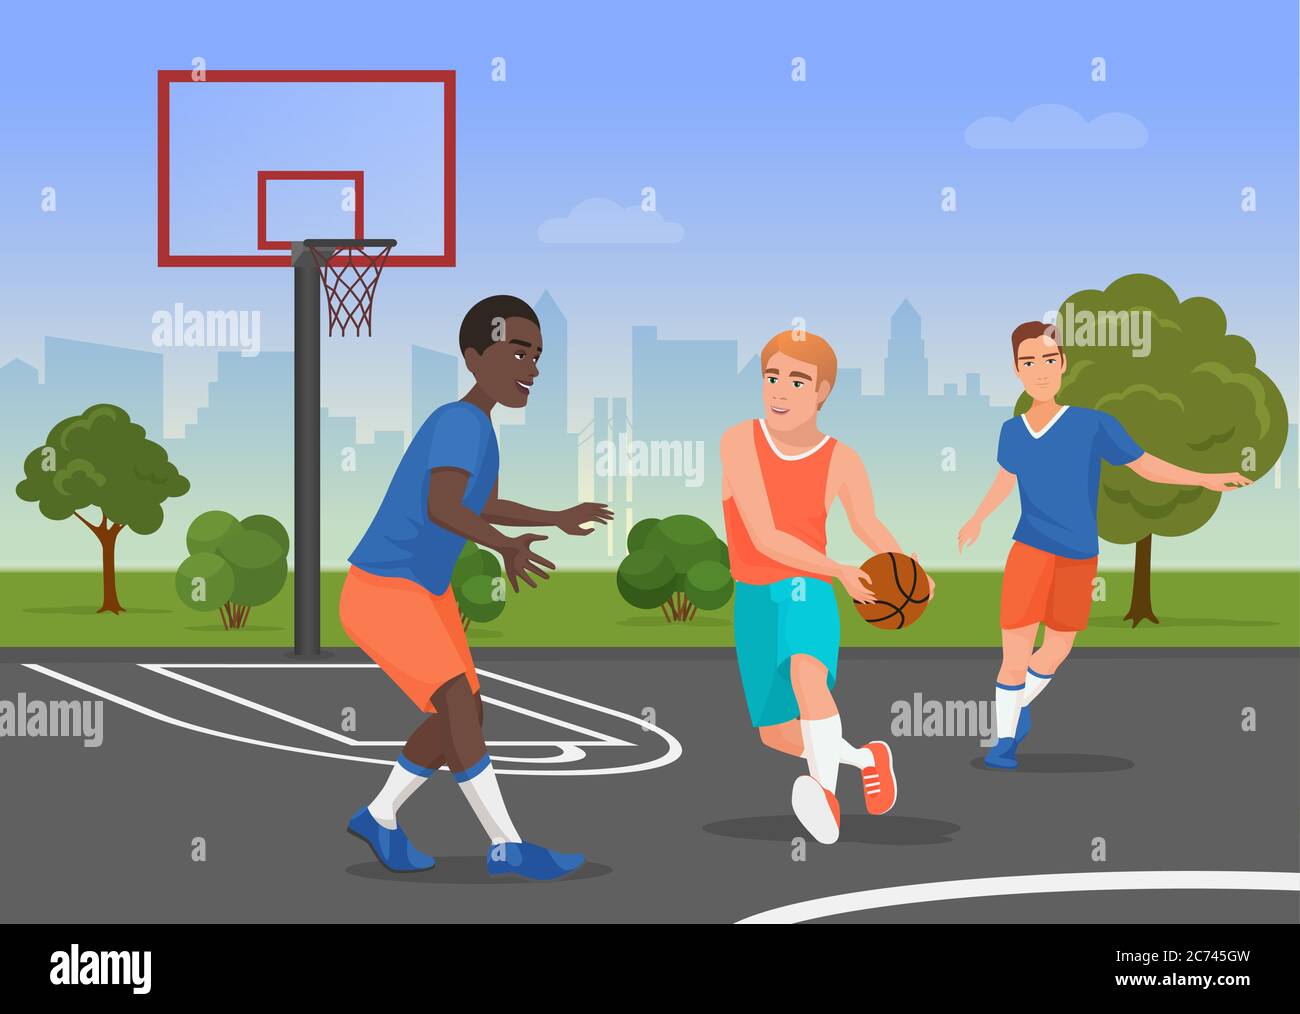 Illustration vectorielle de personnes noires et blanches jouant au streetball sur l'aire de jeux Illustration de Vecteur